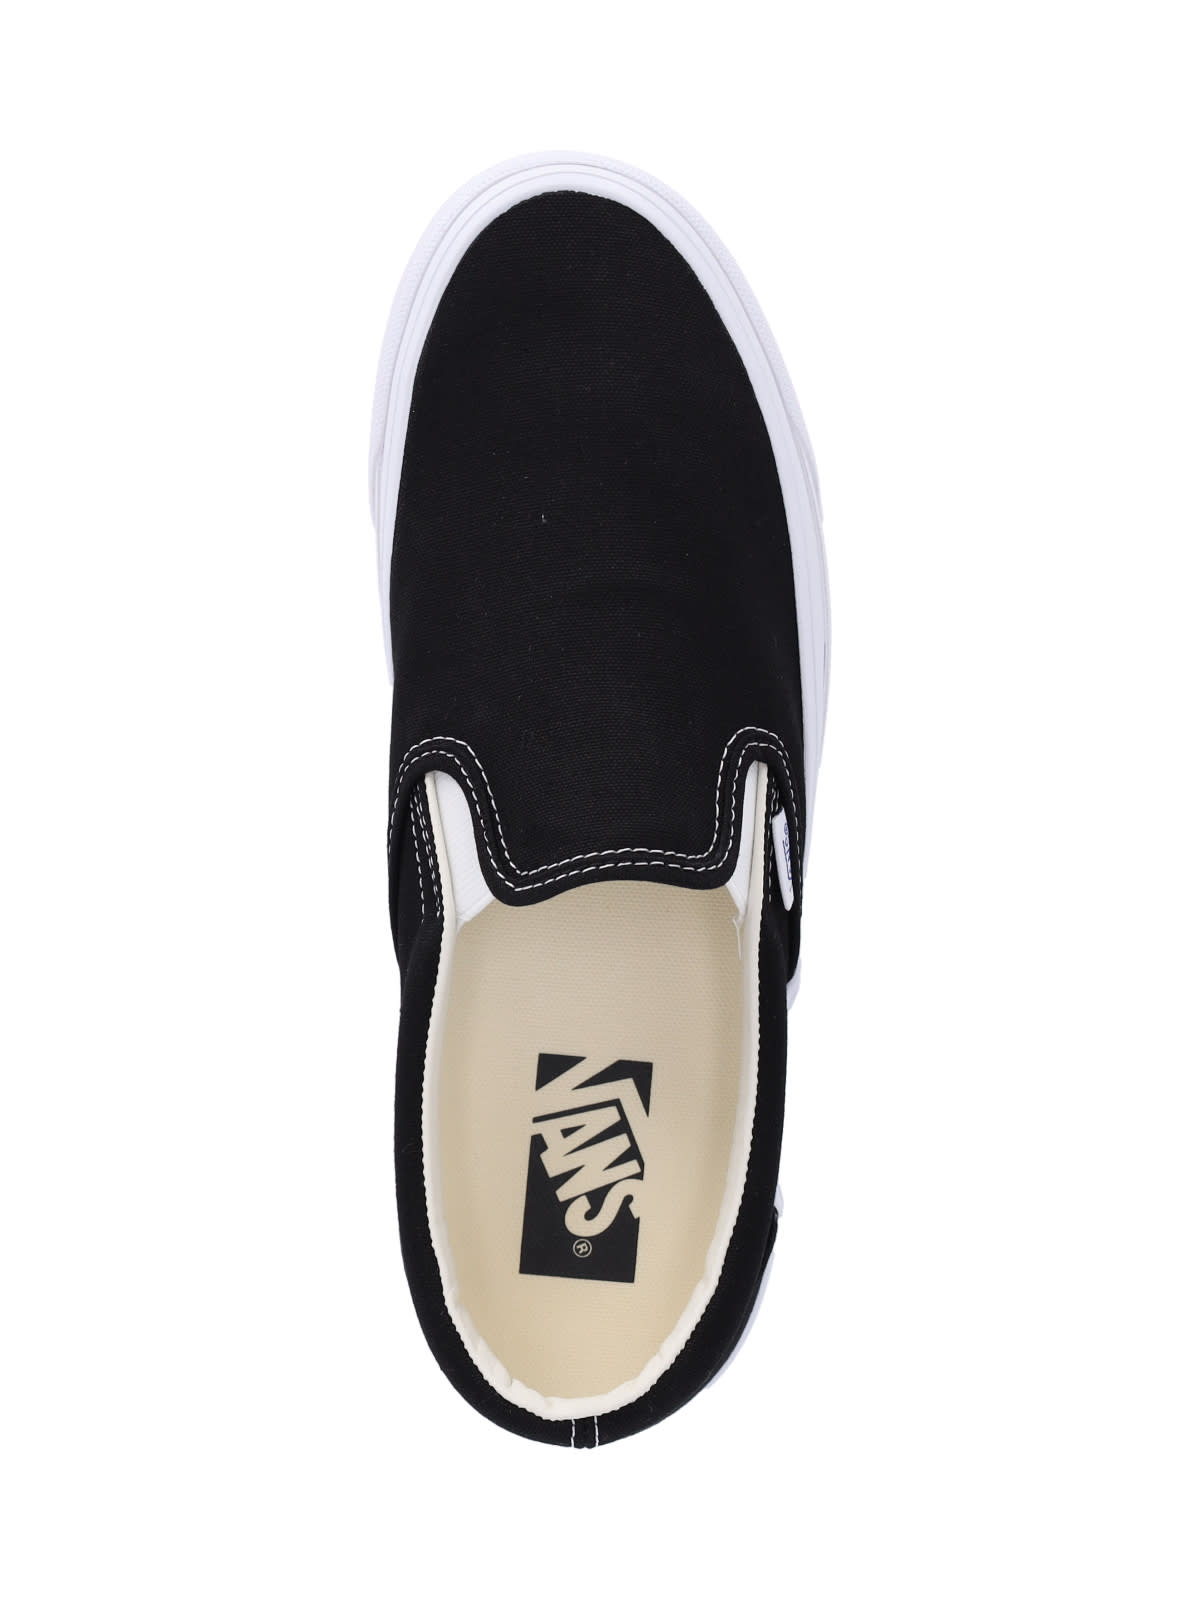 Shop Vans Slip-on 98 Premium Sneakers In Black